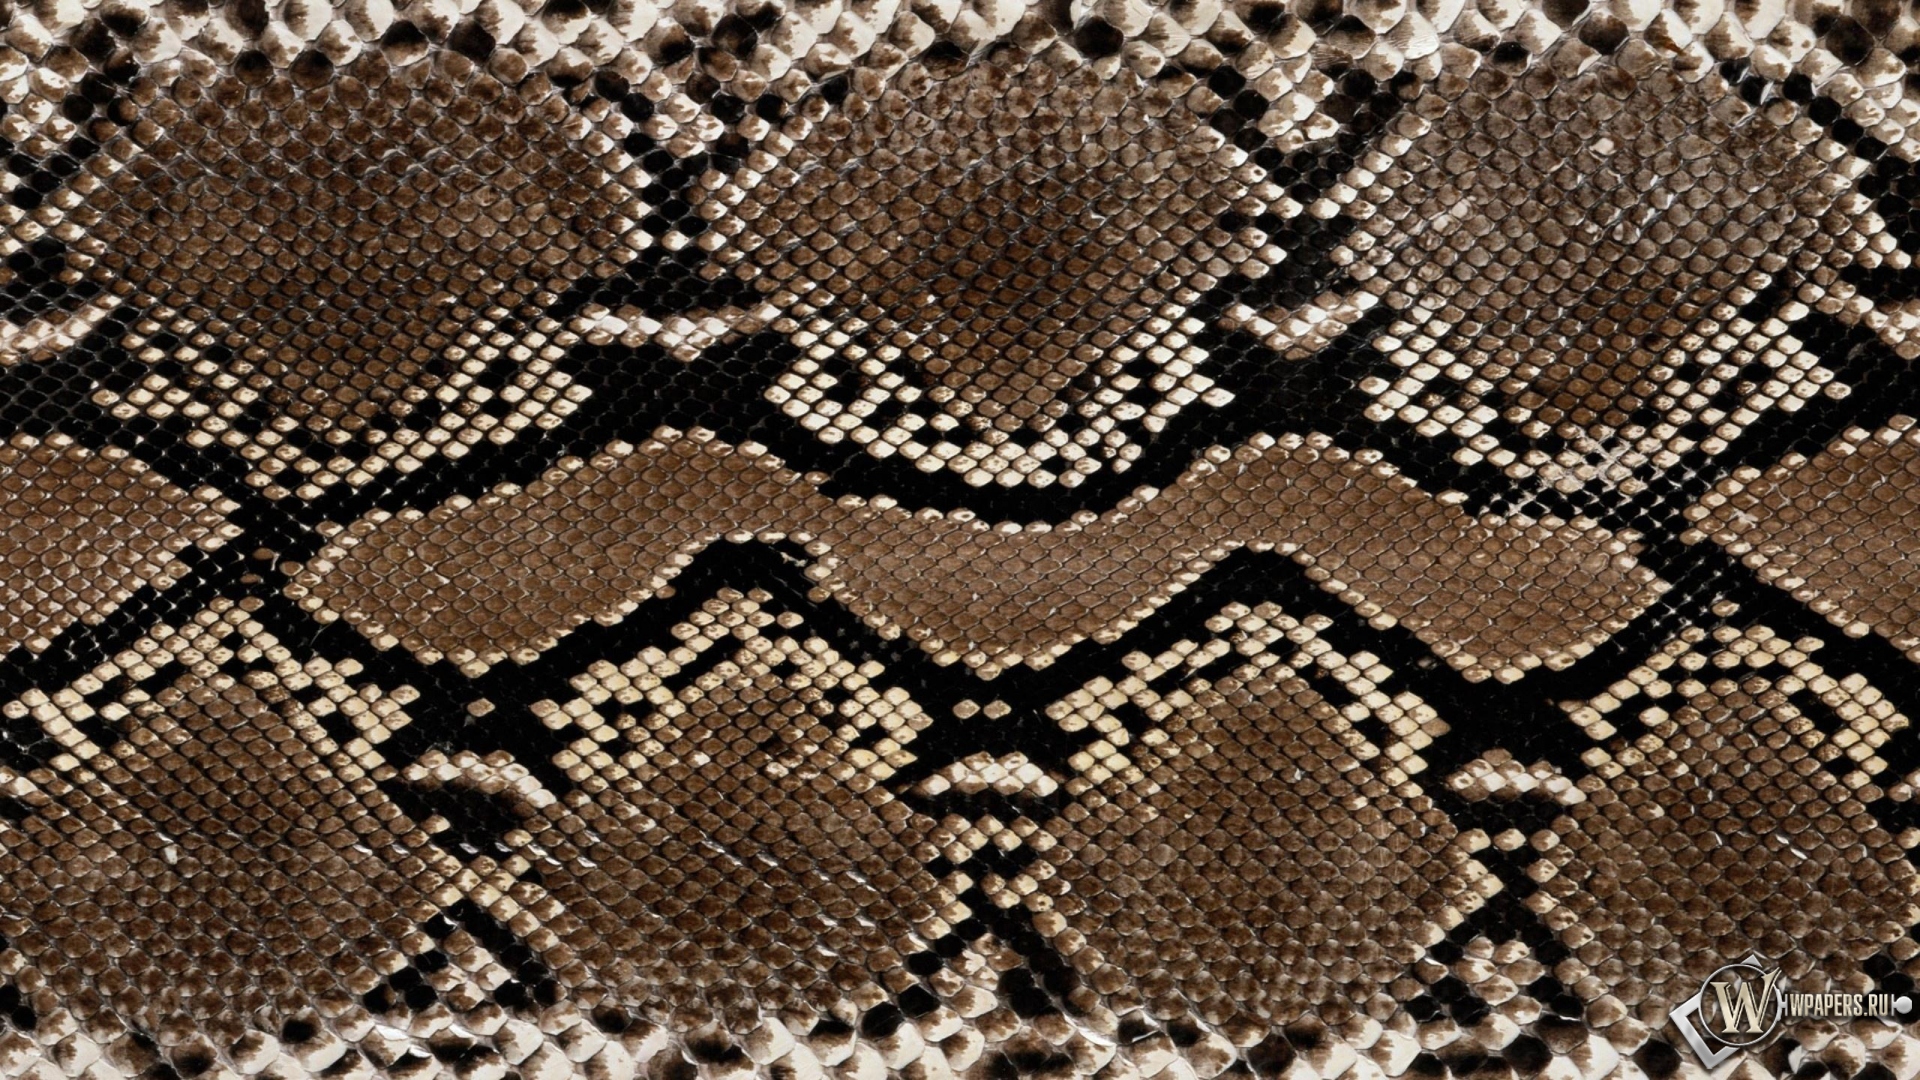 Кожа змеи 1920x1080